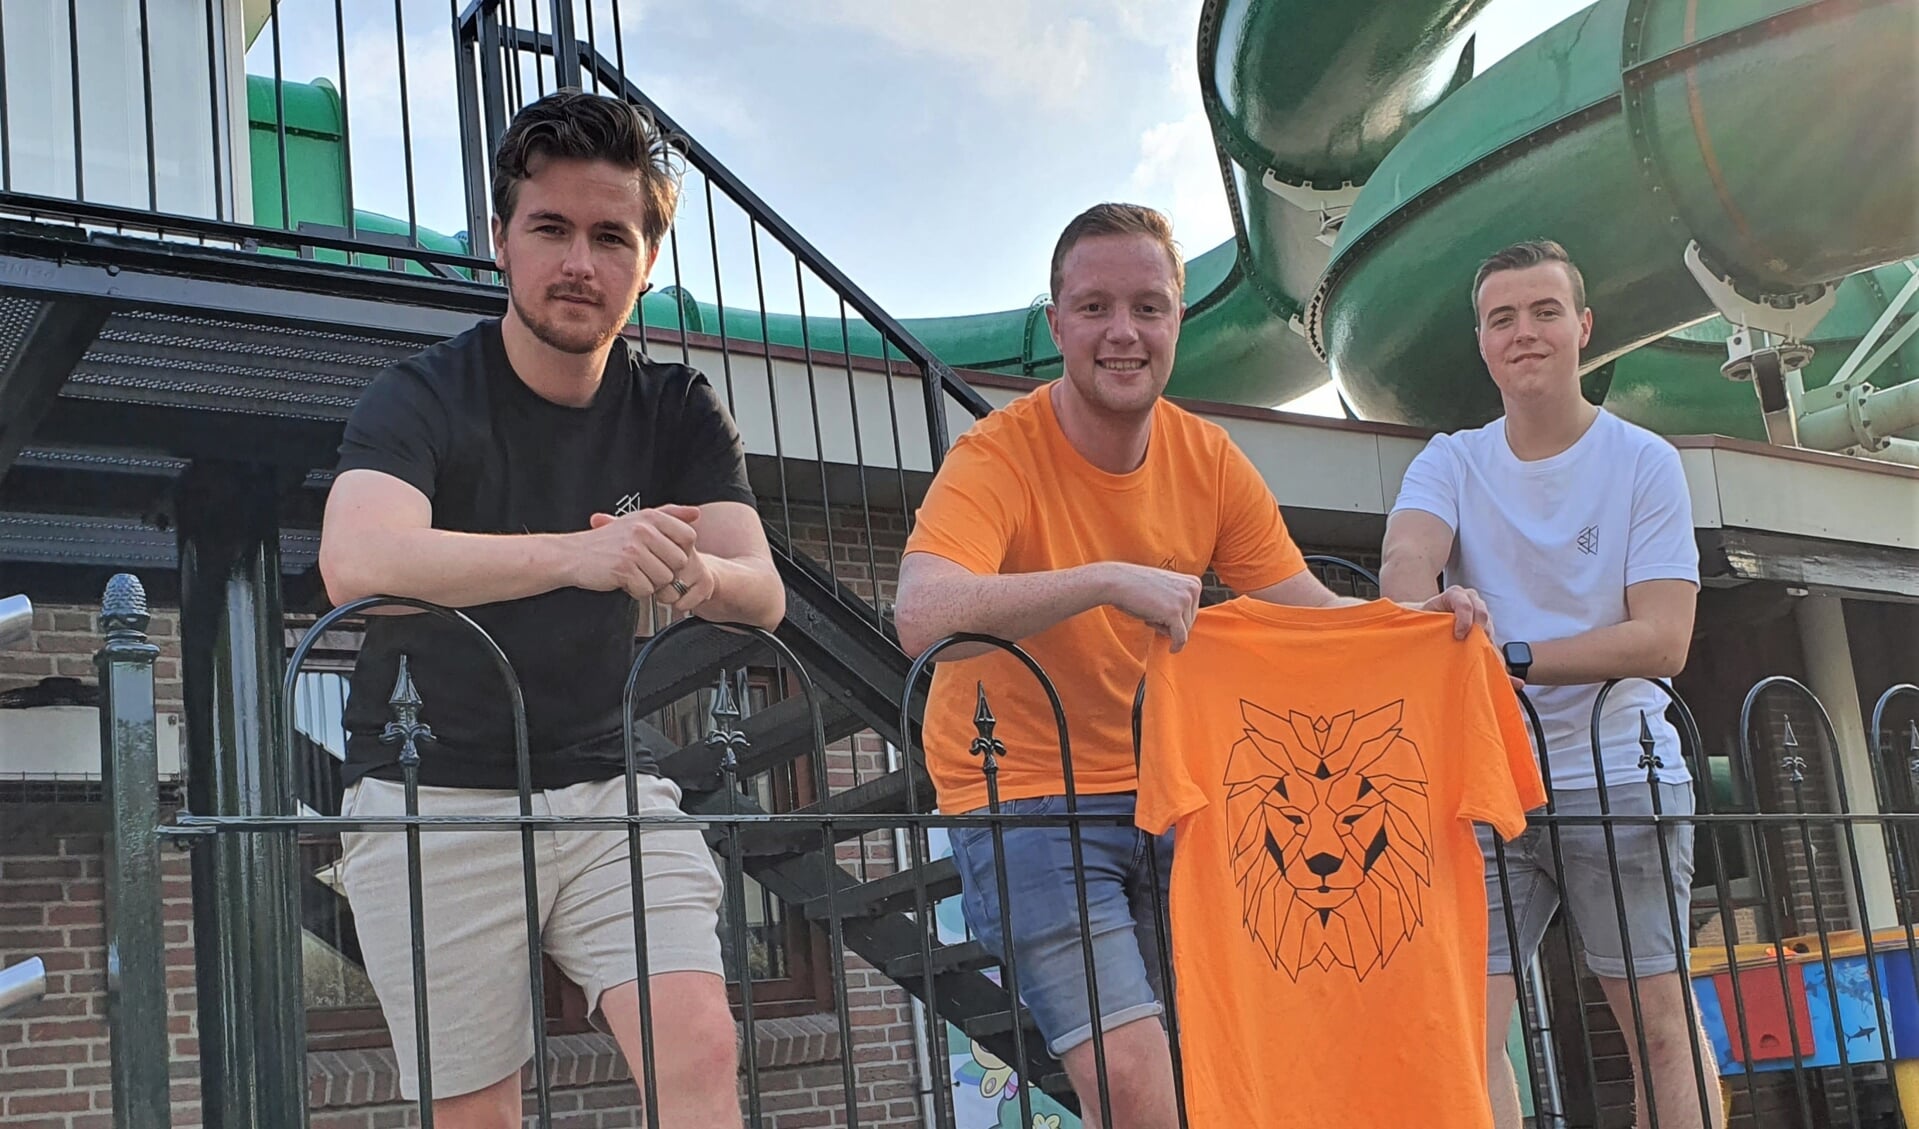 Nick Jansen, Jerle de Jonge en Tim Bomers (vlnr) gekleed in de zelf ontworpen t-shirts. Poserend voor de glijbaan op Marveld Recreatie waar het bedrijfje ontstond. Foto: Henri Walterbos